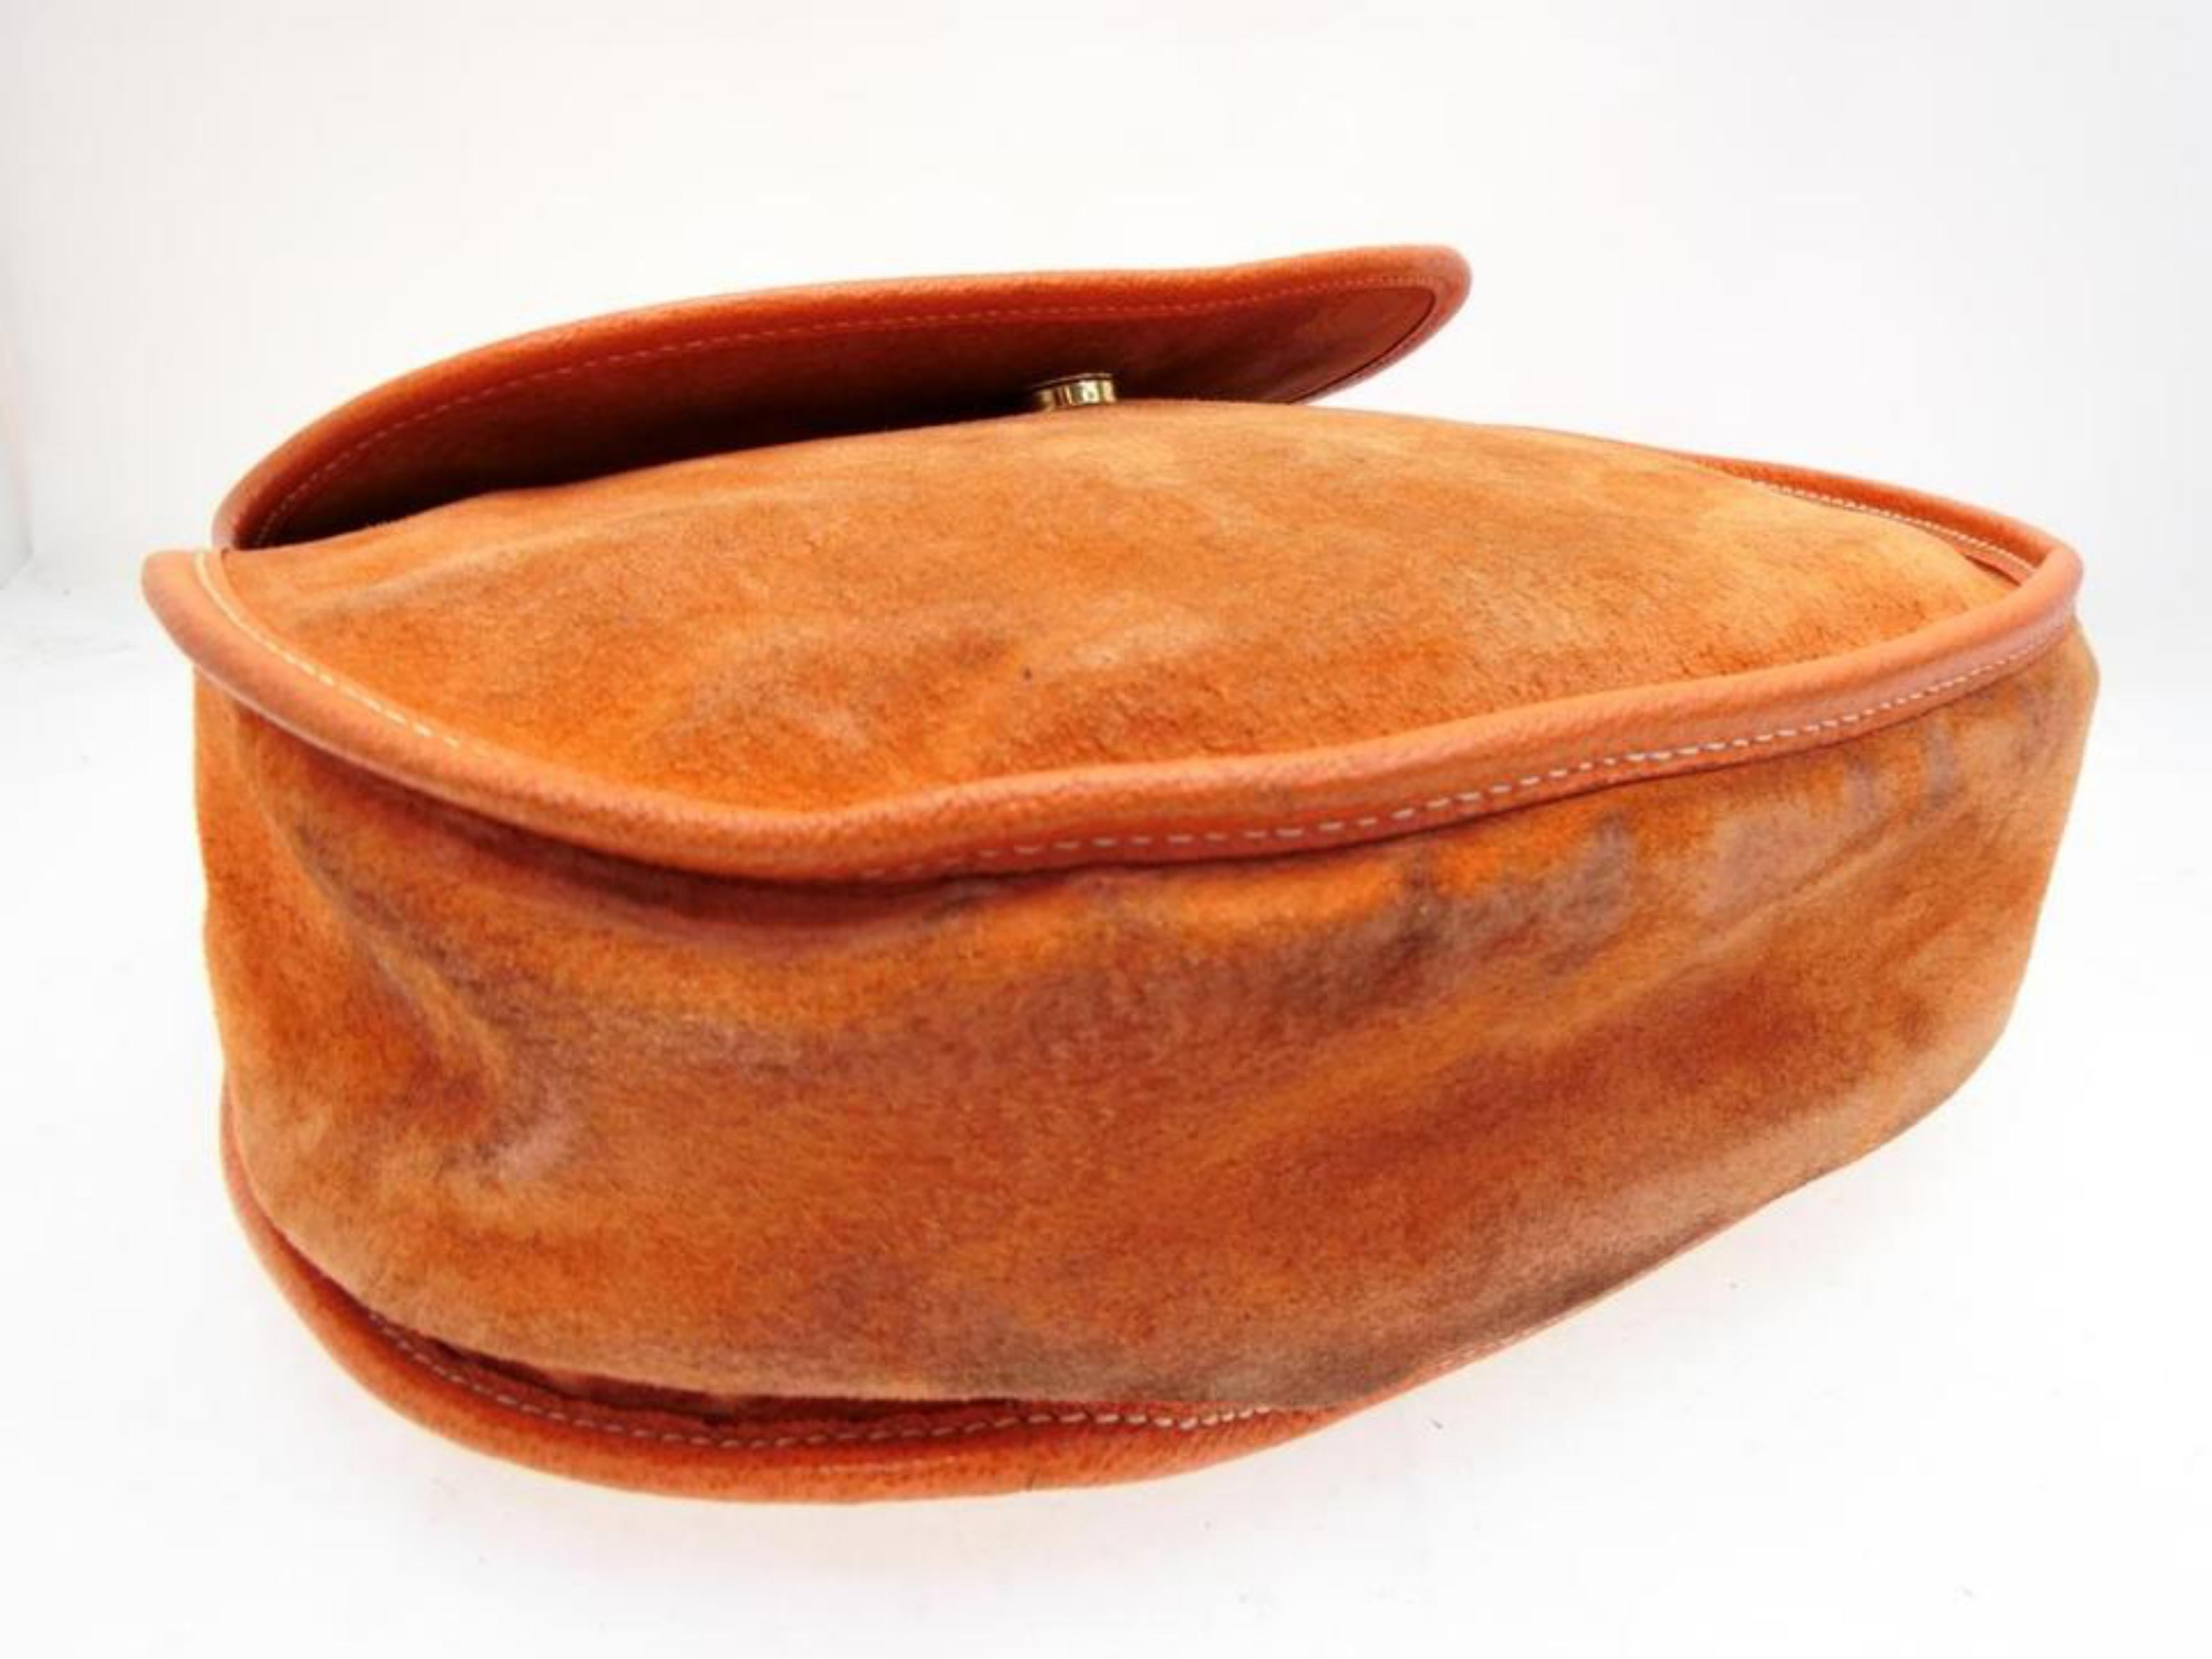 Gucci Horsebit Burnt Body 228677 Orange Suede Leather Shoulder Bag For Sale 2